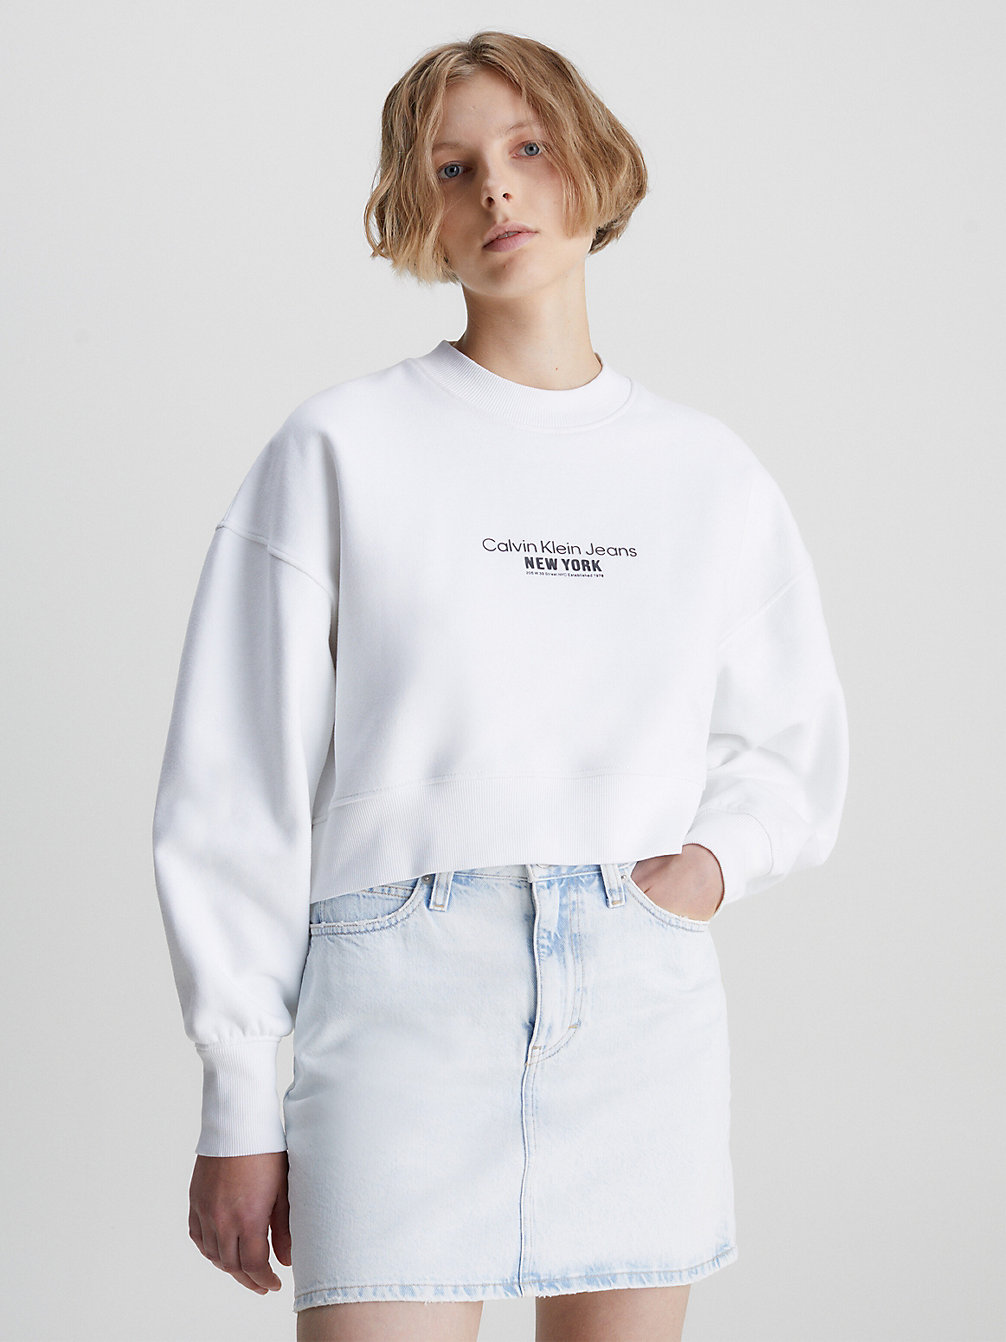 BRIGHT WHITE Cropped Embroidered Sweatshirt undefined women Calvin Klein